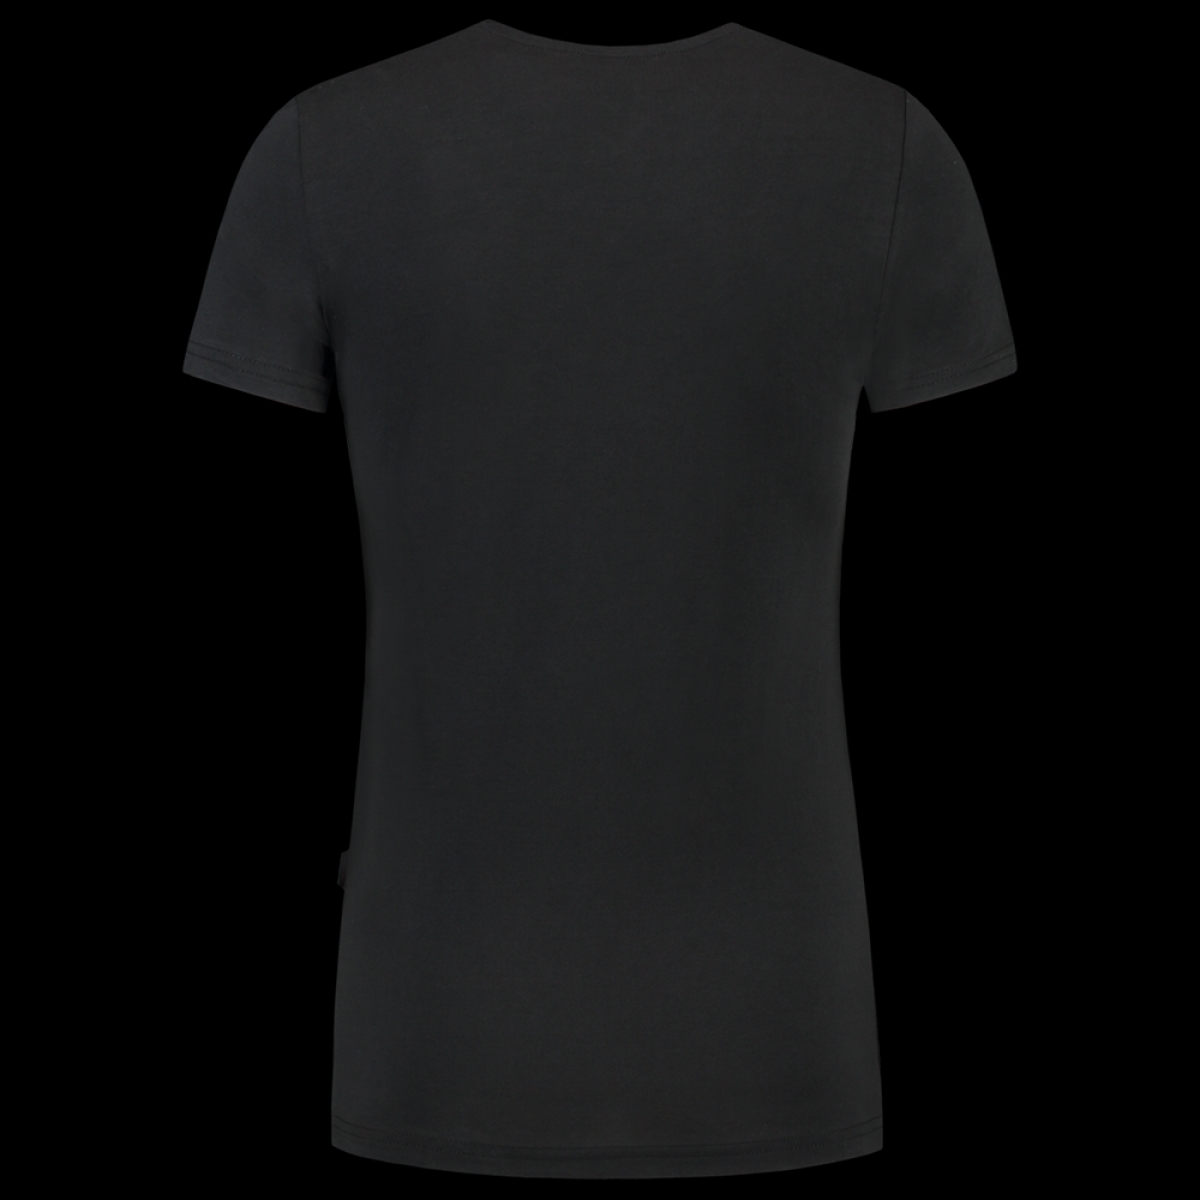 TRICORP-Worker-Shirts, Damen-T-Shirts, V-Ausschnitt, 190 g/m, black